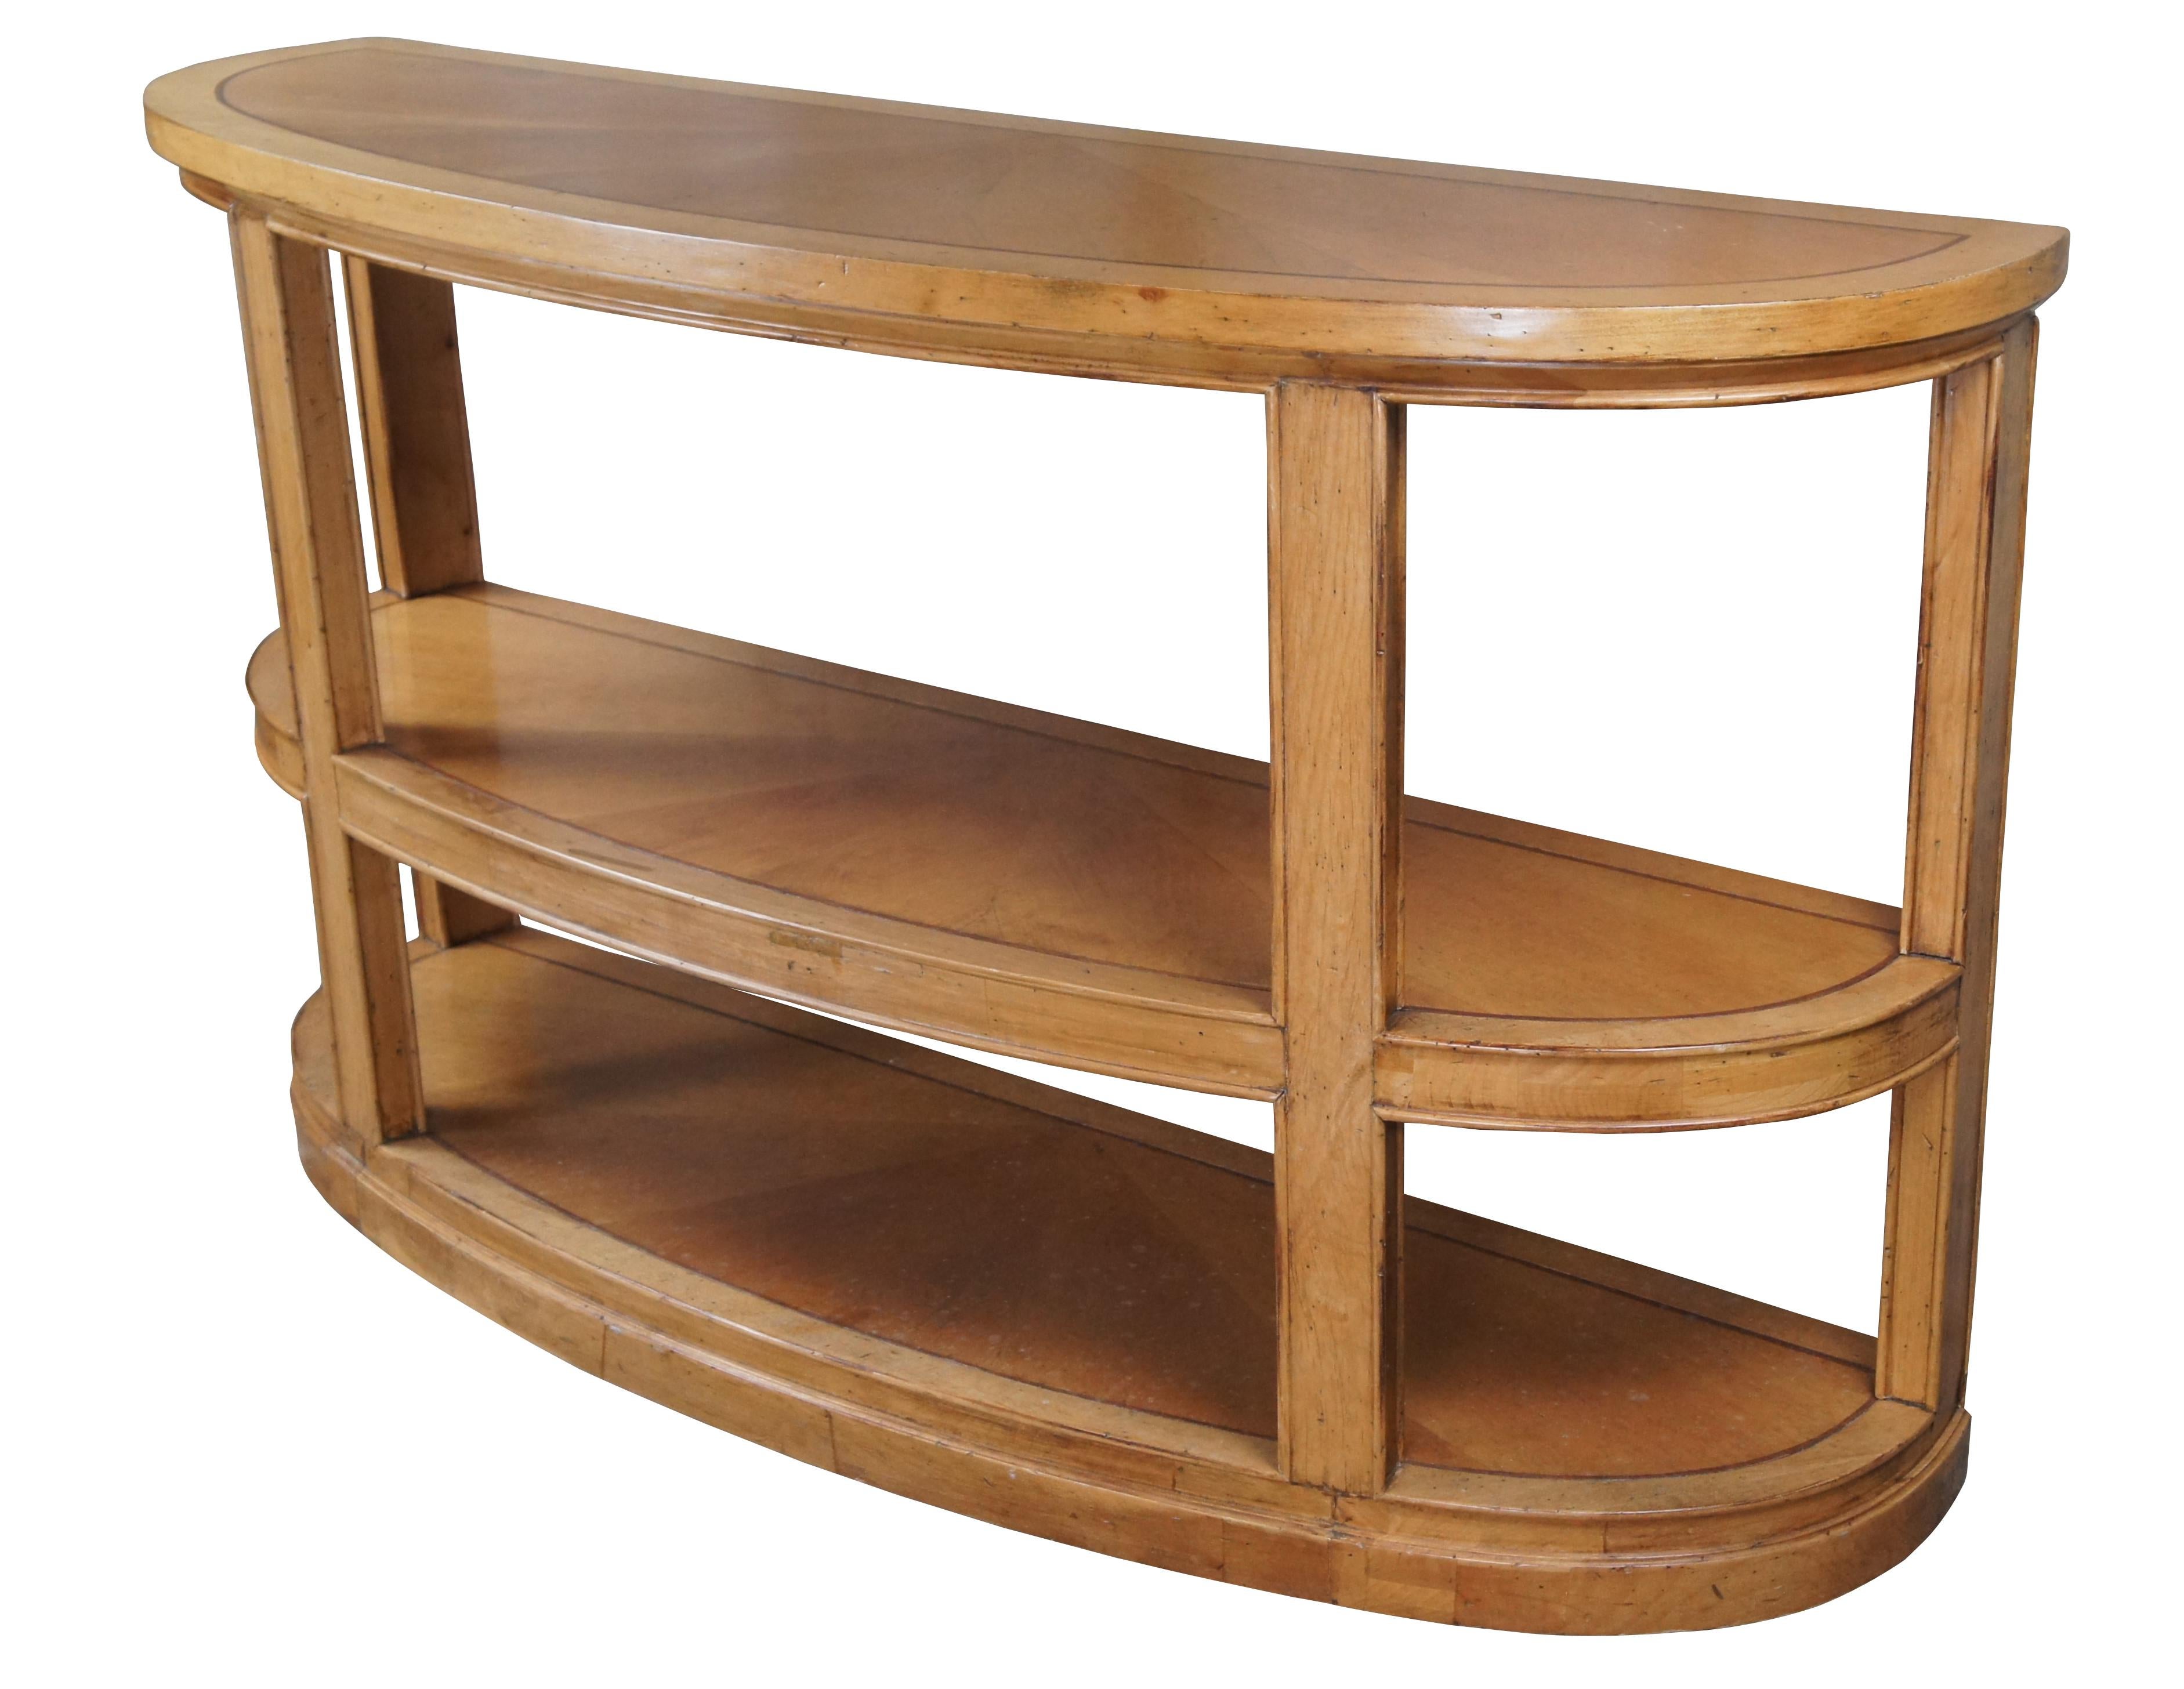 Kravet Furniture table console demilune. Elle présente une forme démilunie à trois niveaux en érable avec une bordure incrustée. Les surfaces de la table sont recouvertes d'un placage en bois d'allumettes qui met en valeur un magnifique motif en